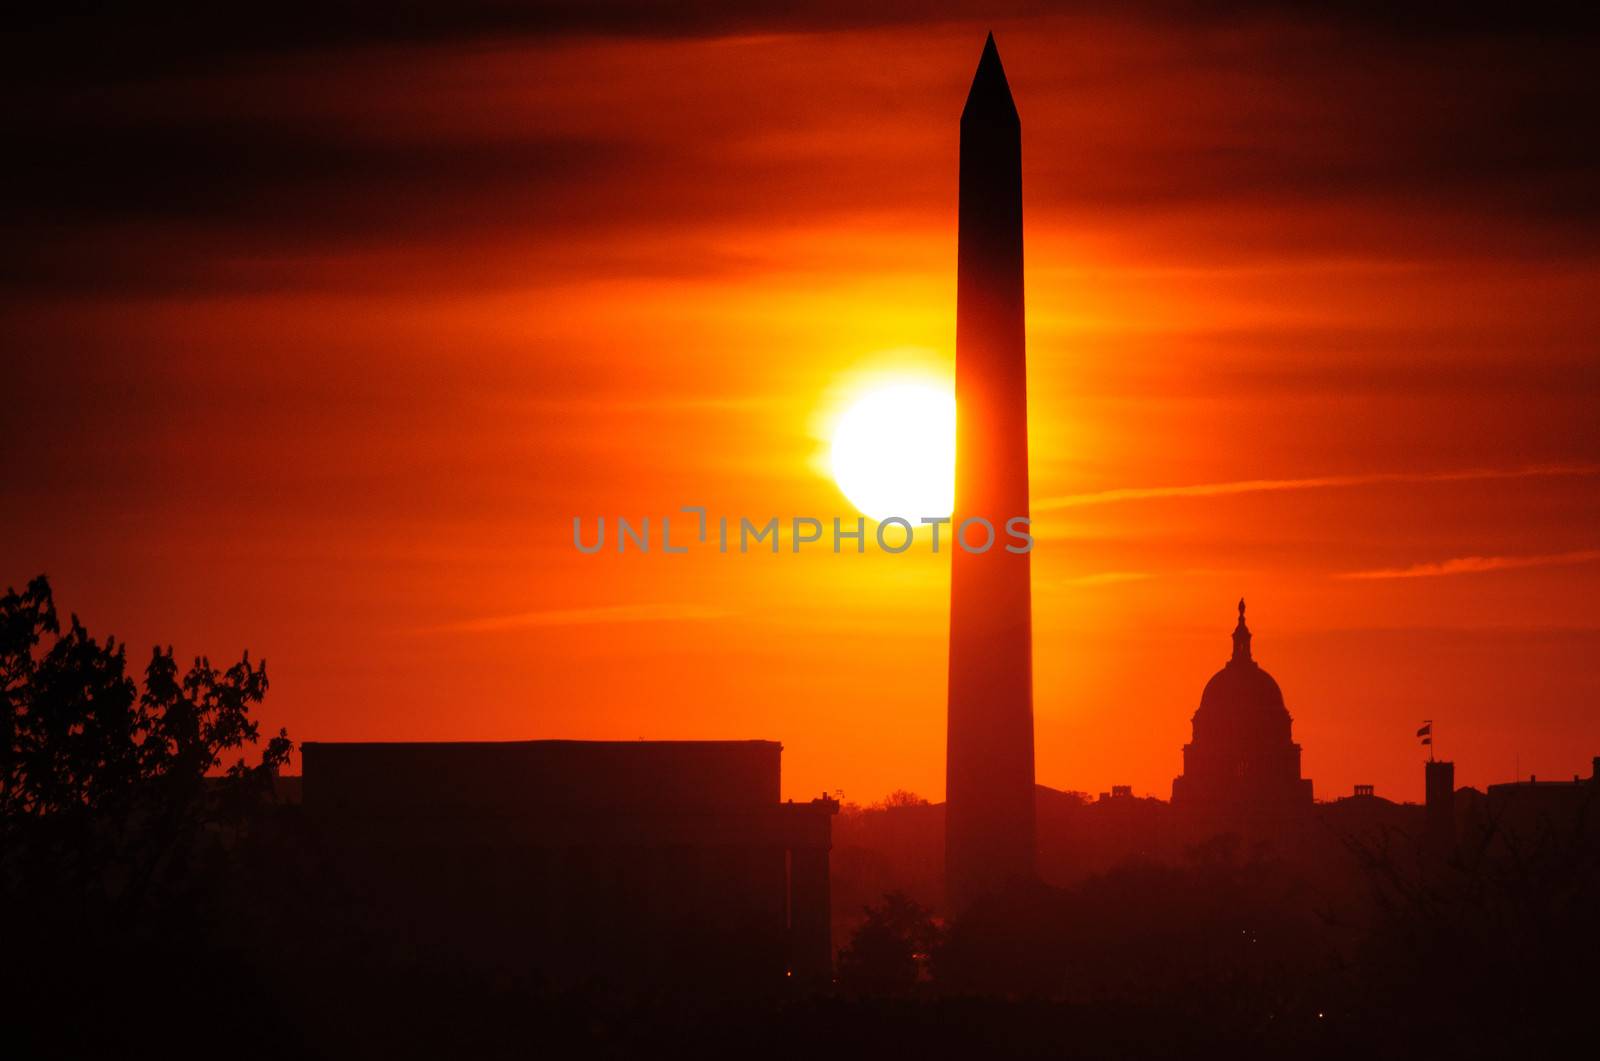 Washington Monument at sunset by CelsoDiniz